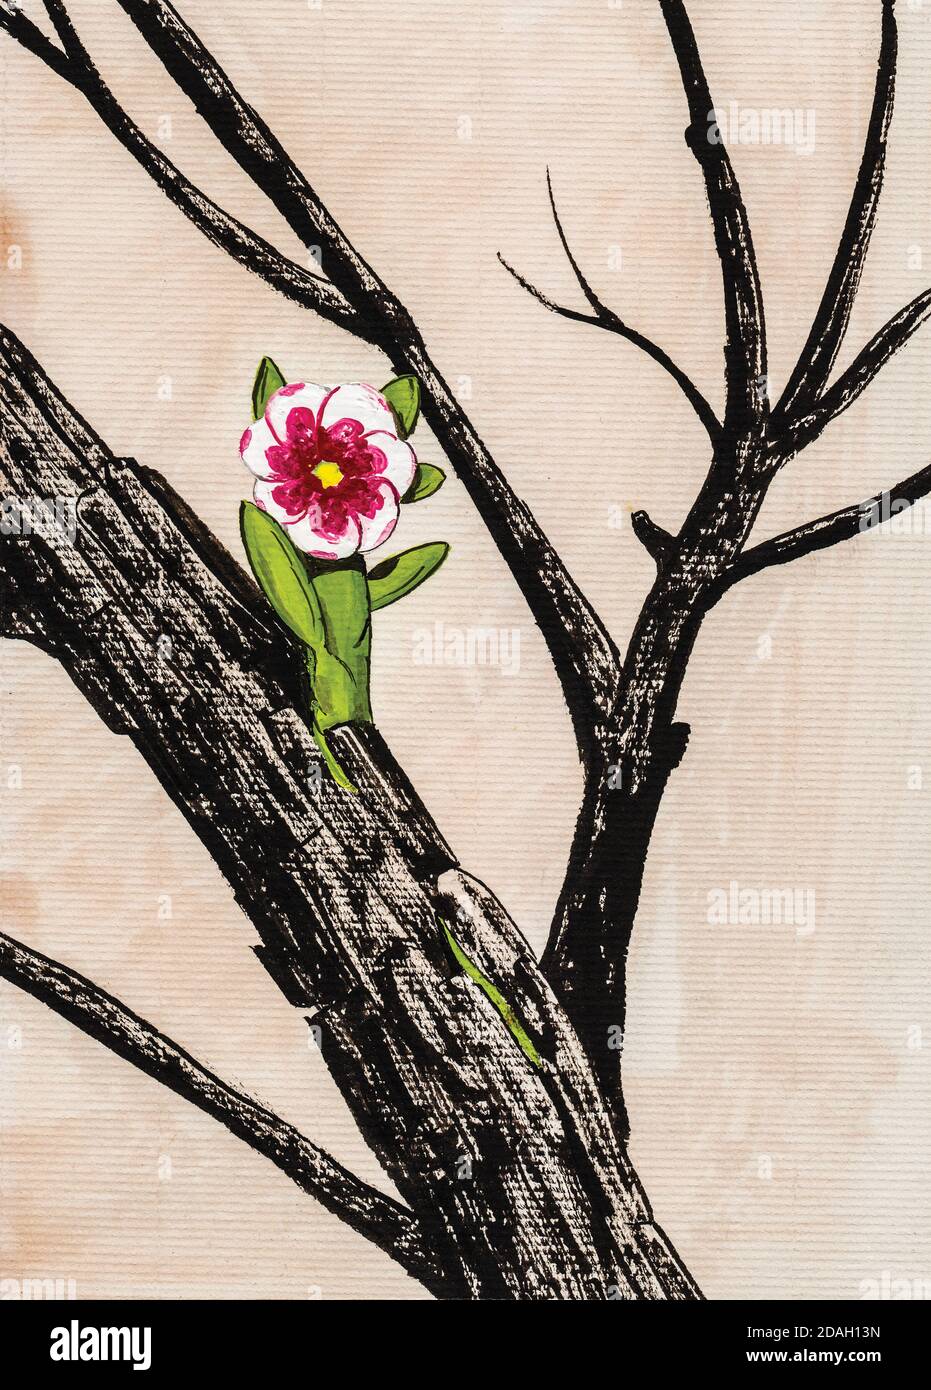 Ilustración de una flor pequeña y colorida que crece de una rama carbonada.  Acuarela y dibujo de tinta Fotografía de stock - Alamy